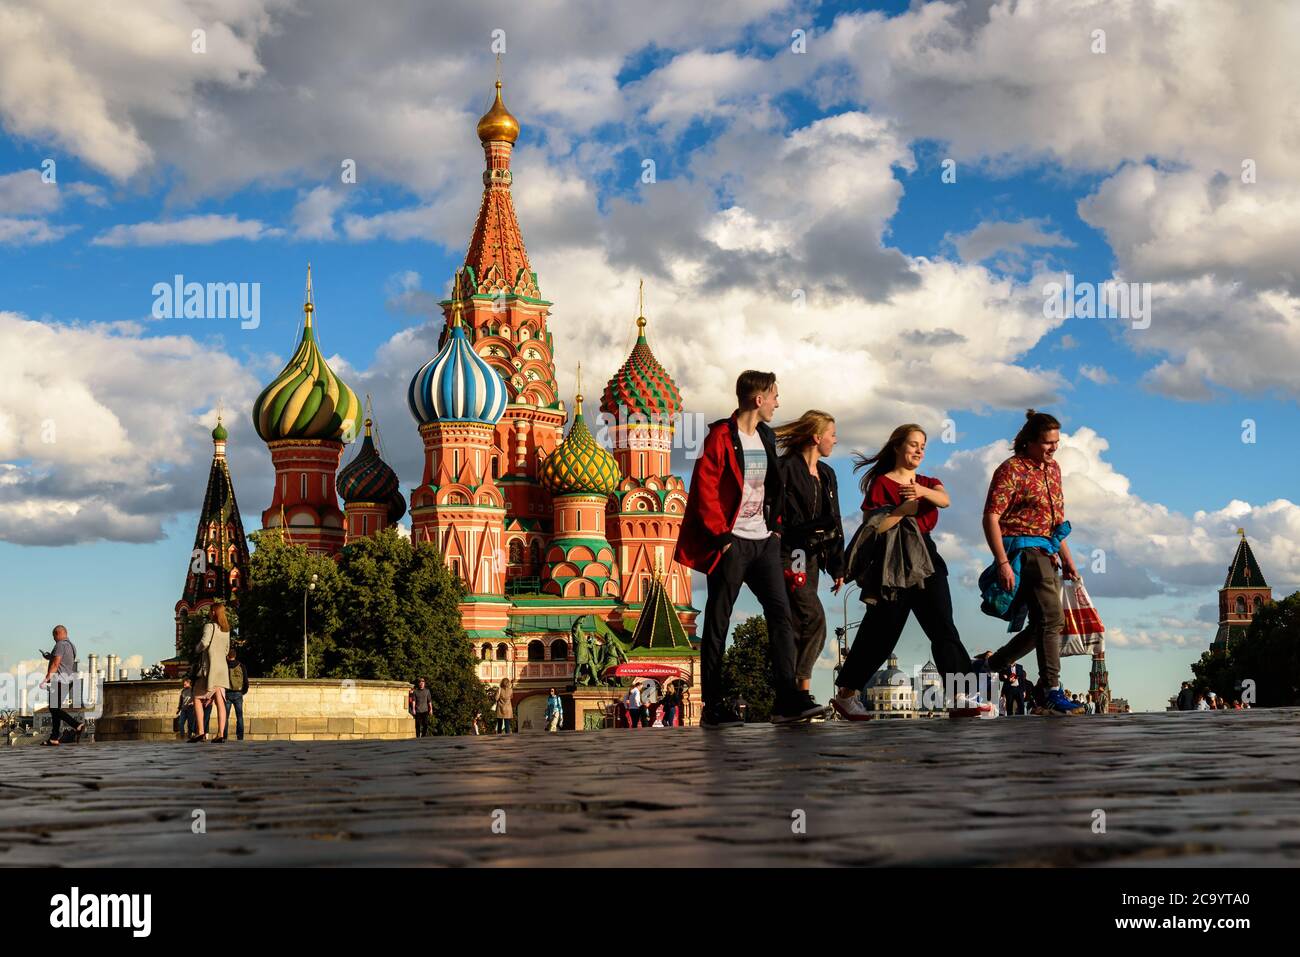 Mosca - 23 luglio 2020: Cattedrale di San Basilio`s sulla Piazza Rossa a Mosca, Russia. E' una famosa attrazione turistica di Mosca. La gente cammina vicino a Saint Ba vecchia Foto Stock